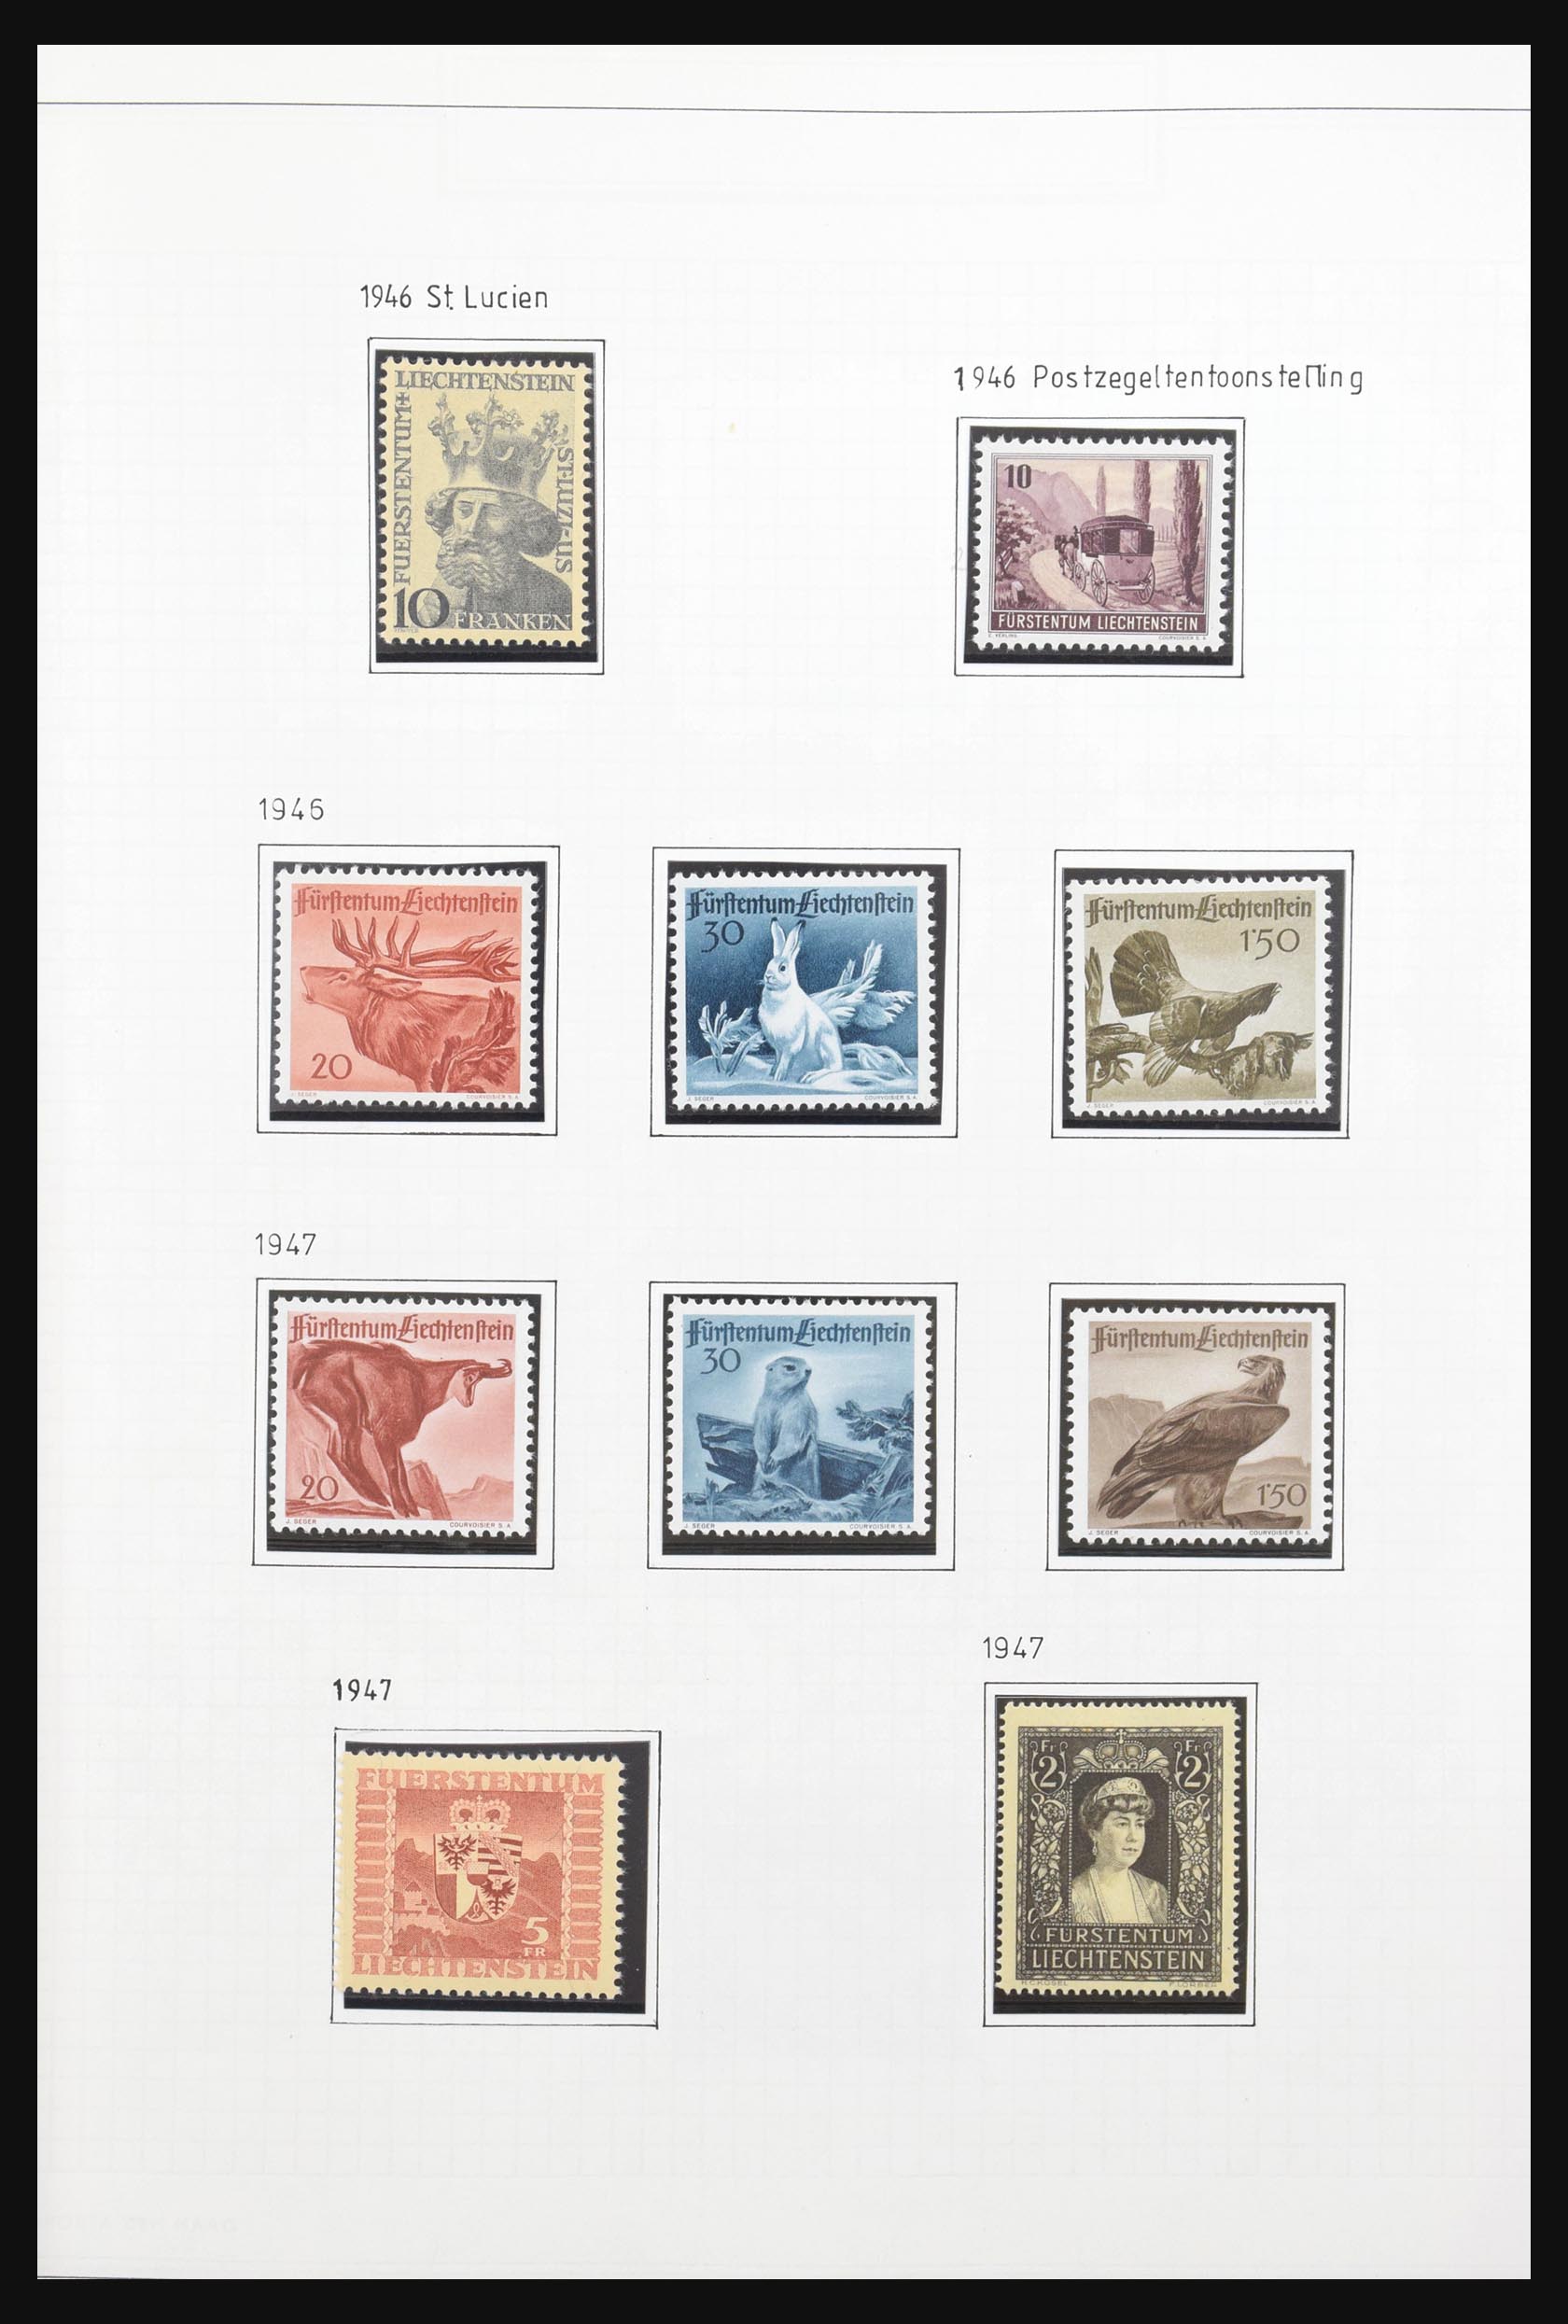 31131 021 - 31131 Liechtenstein 1912-2013.